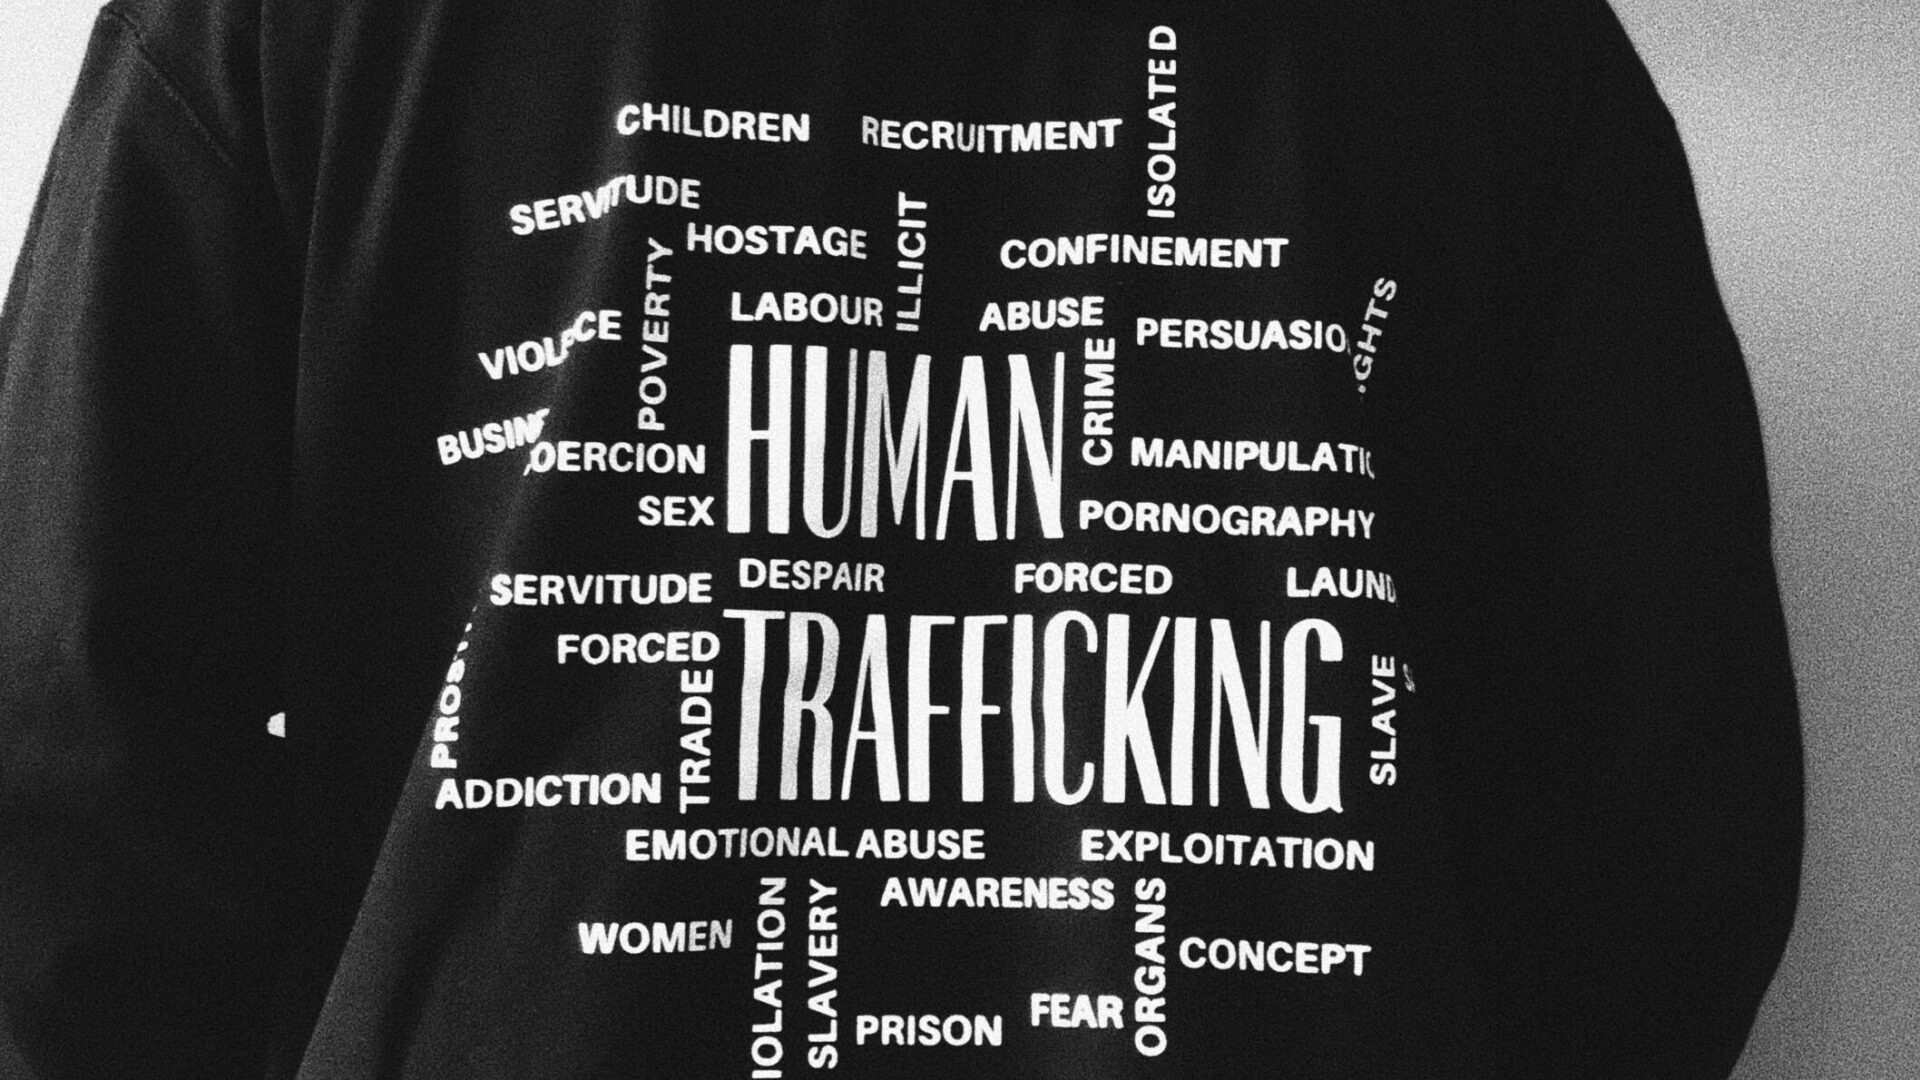 Human trafficking